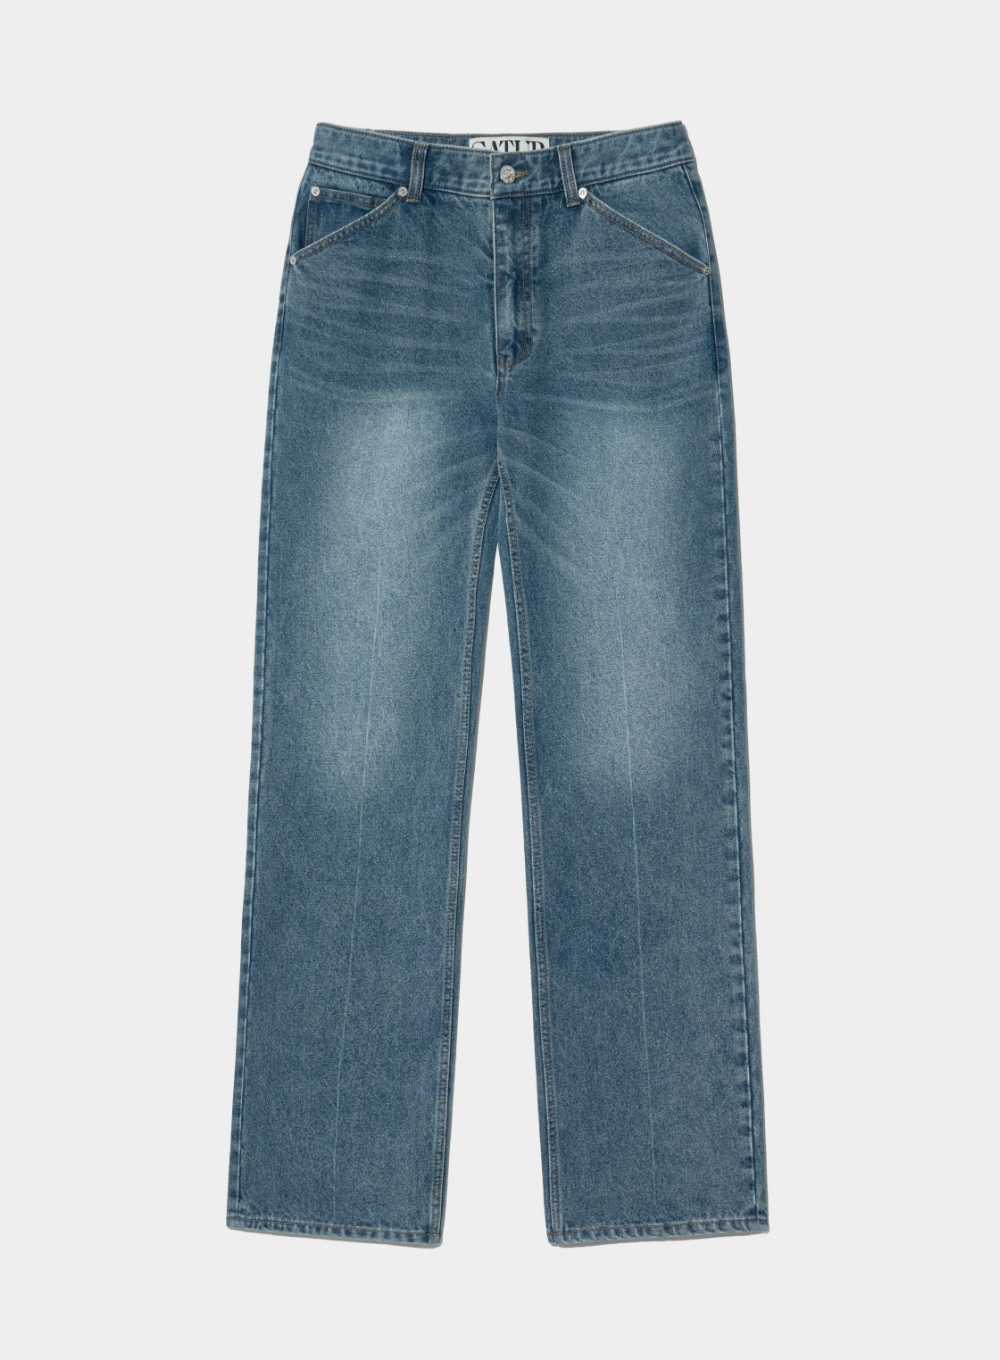 Classic Chelsea Denim Pants - Medium Washed Blue